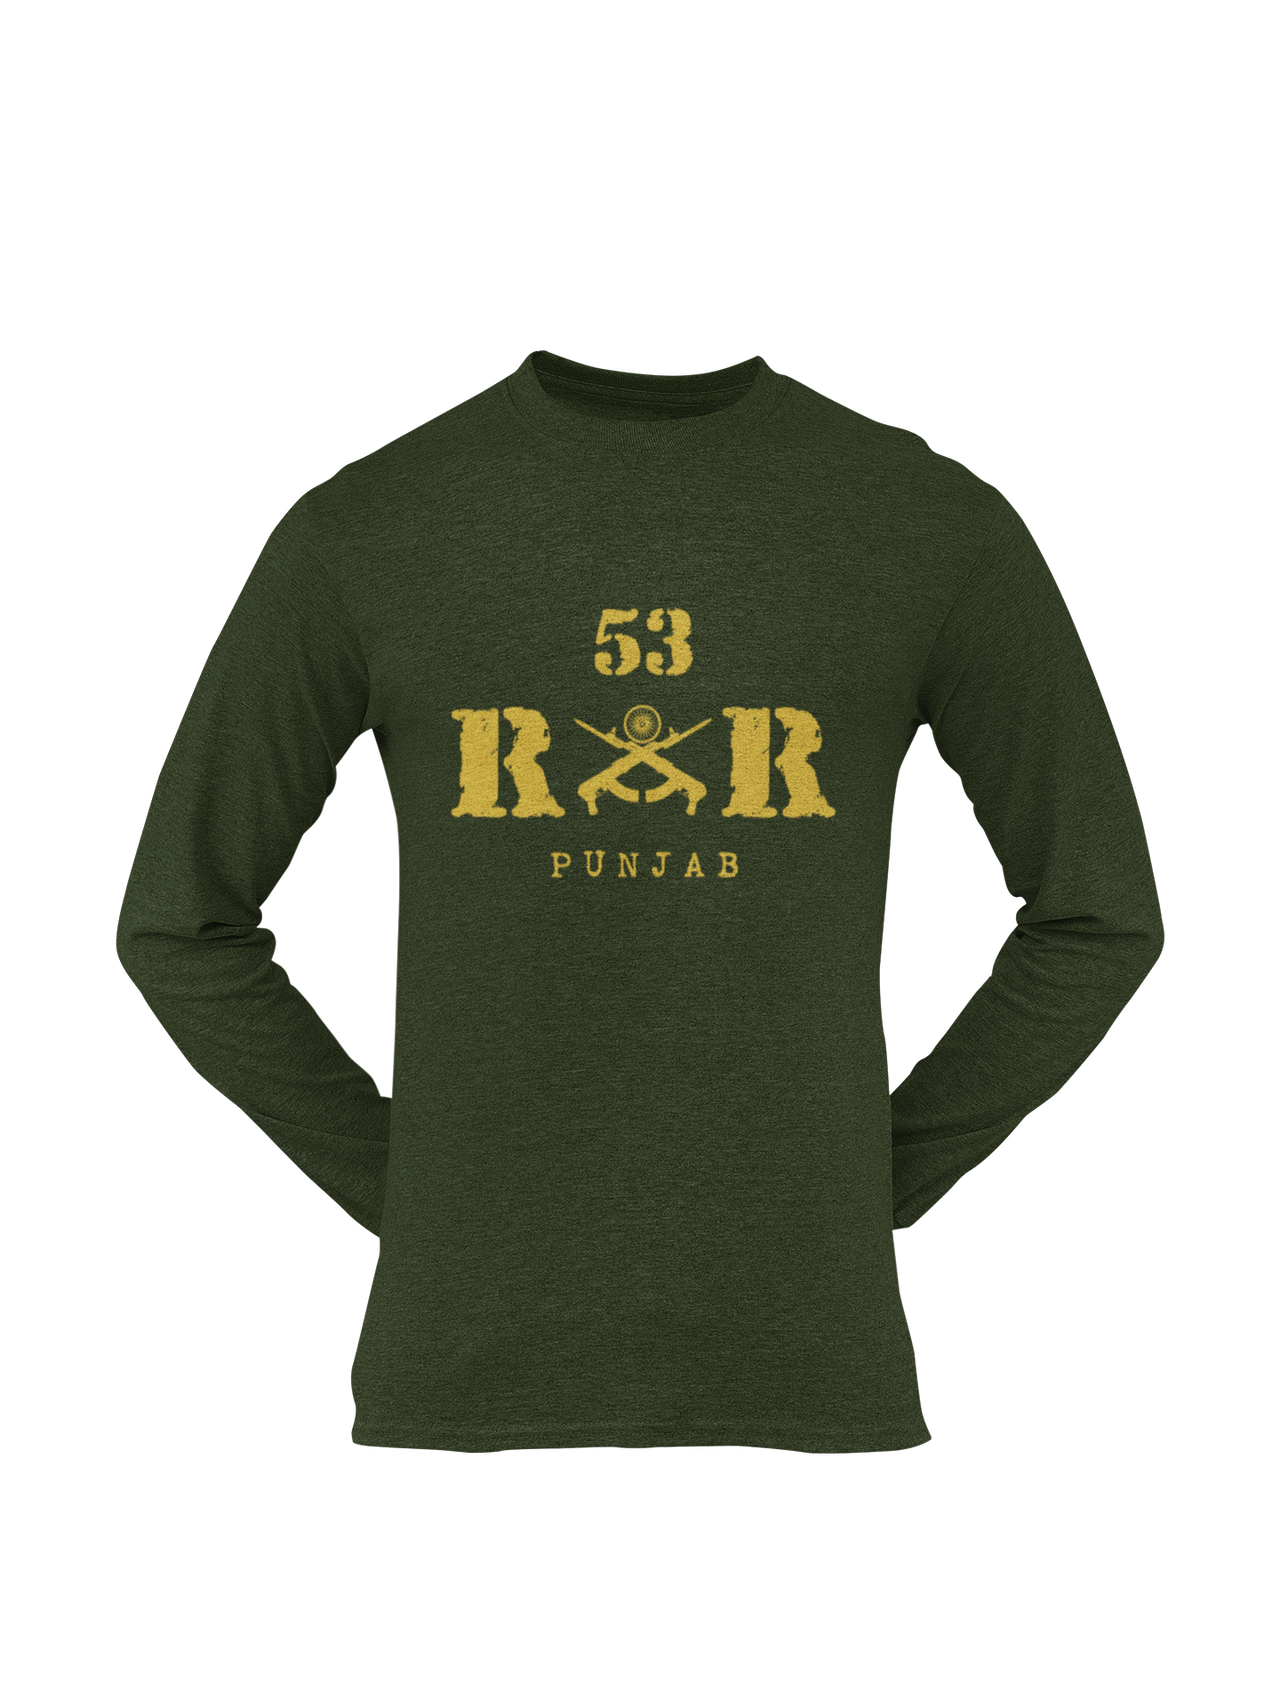 Rashtriya Rifles T-shirt - 53 RR Punjab (Men)